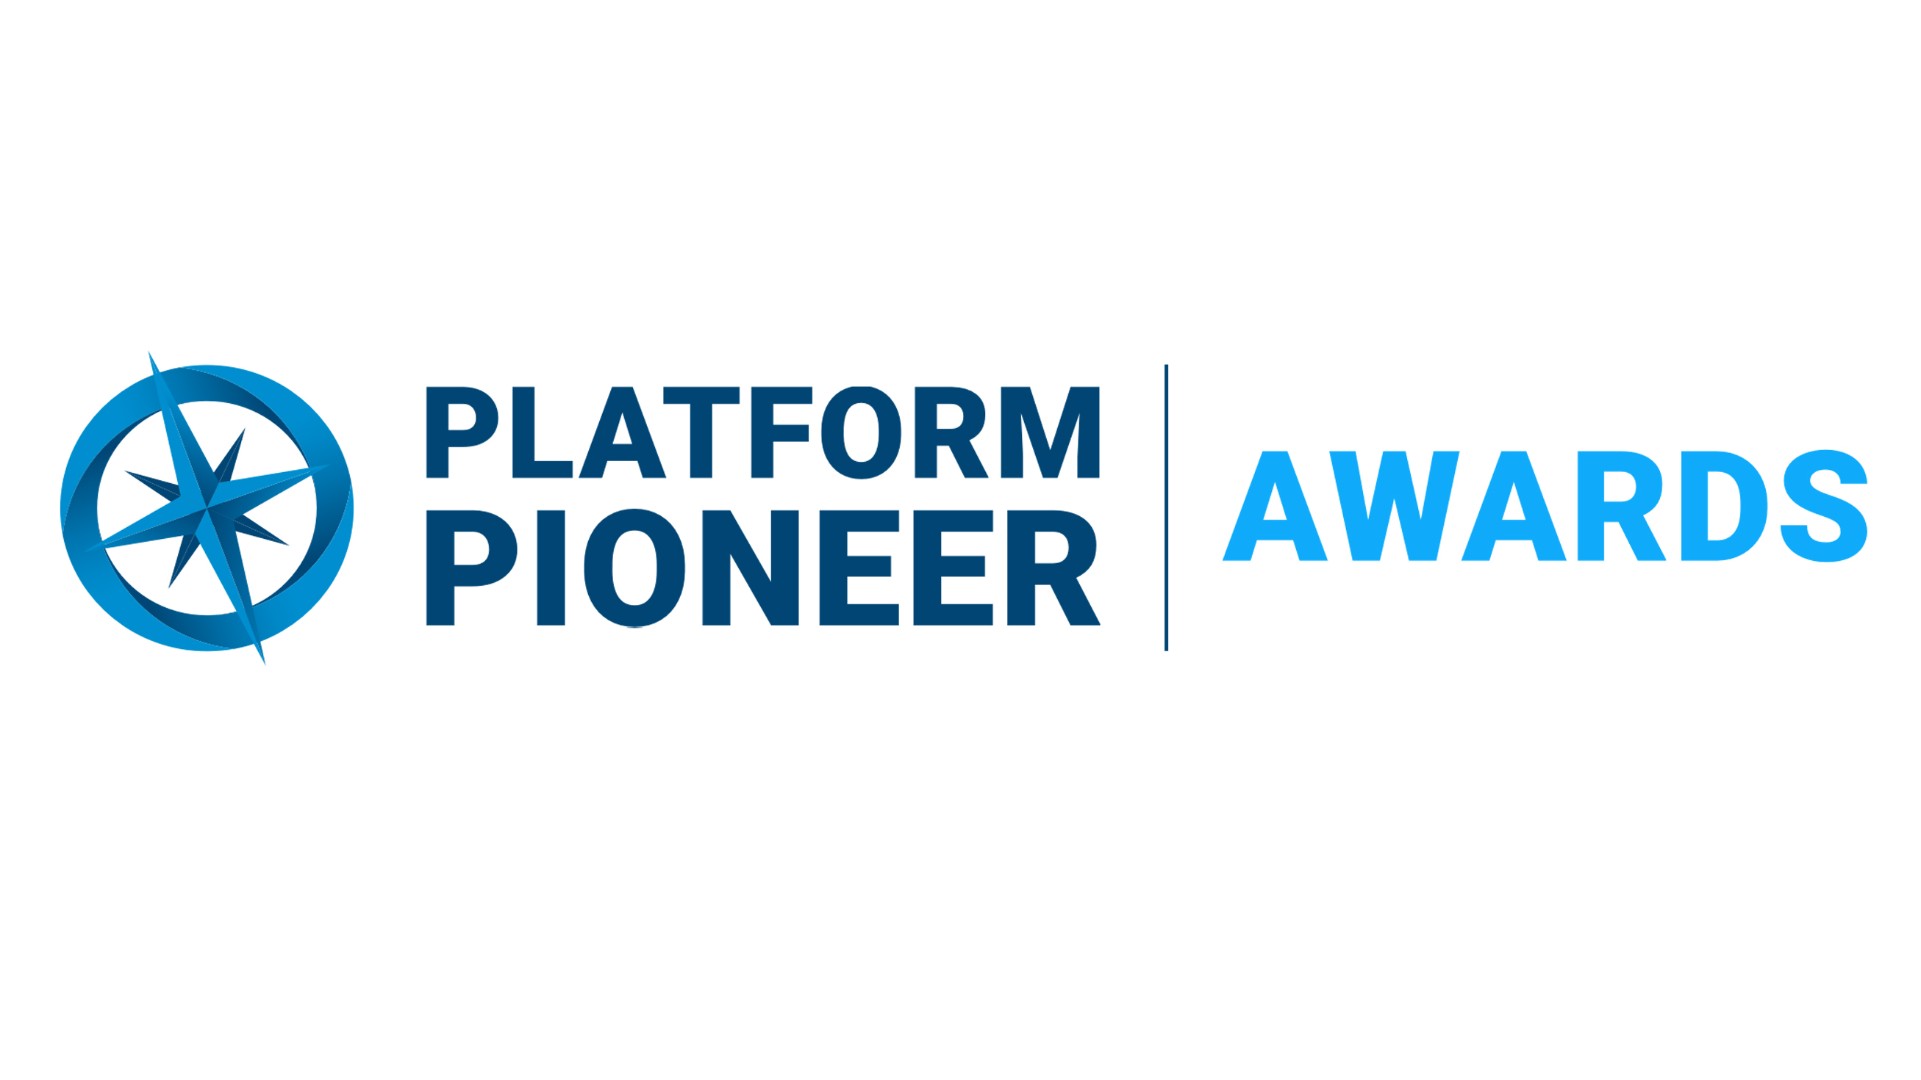 Mirakl Platform Pioneer Awards 2022